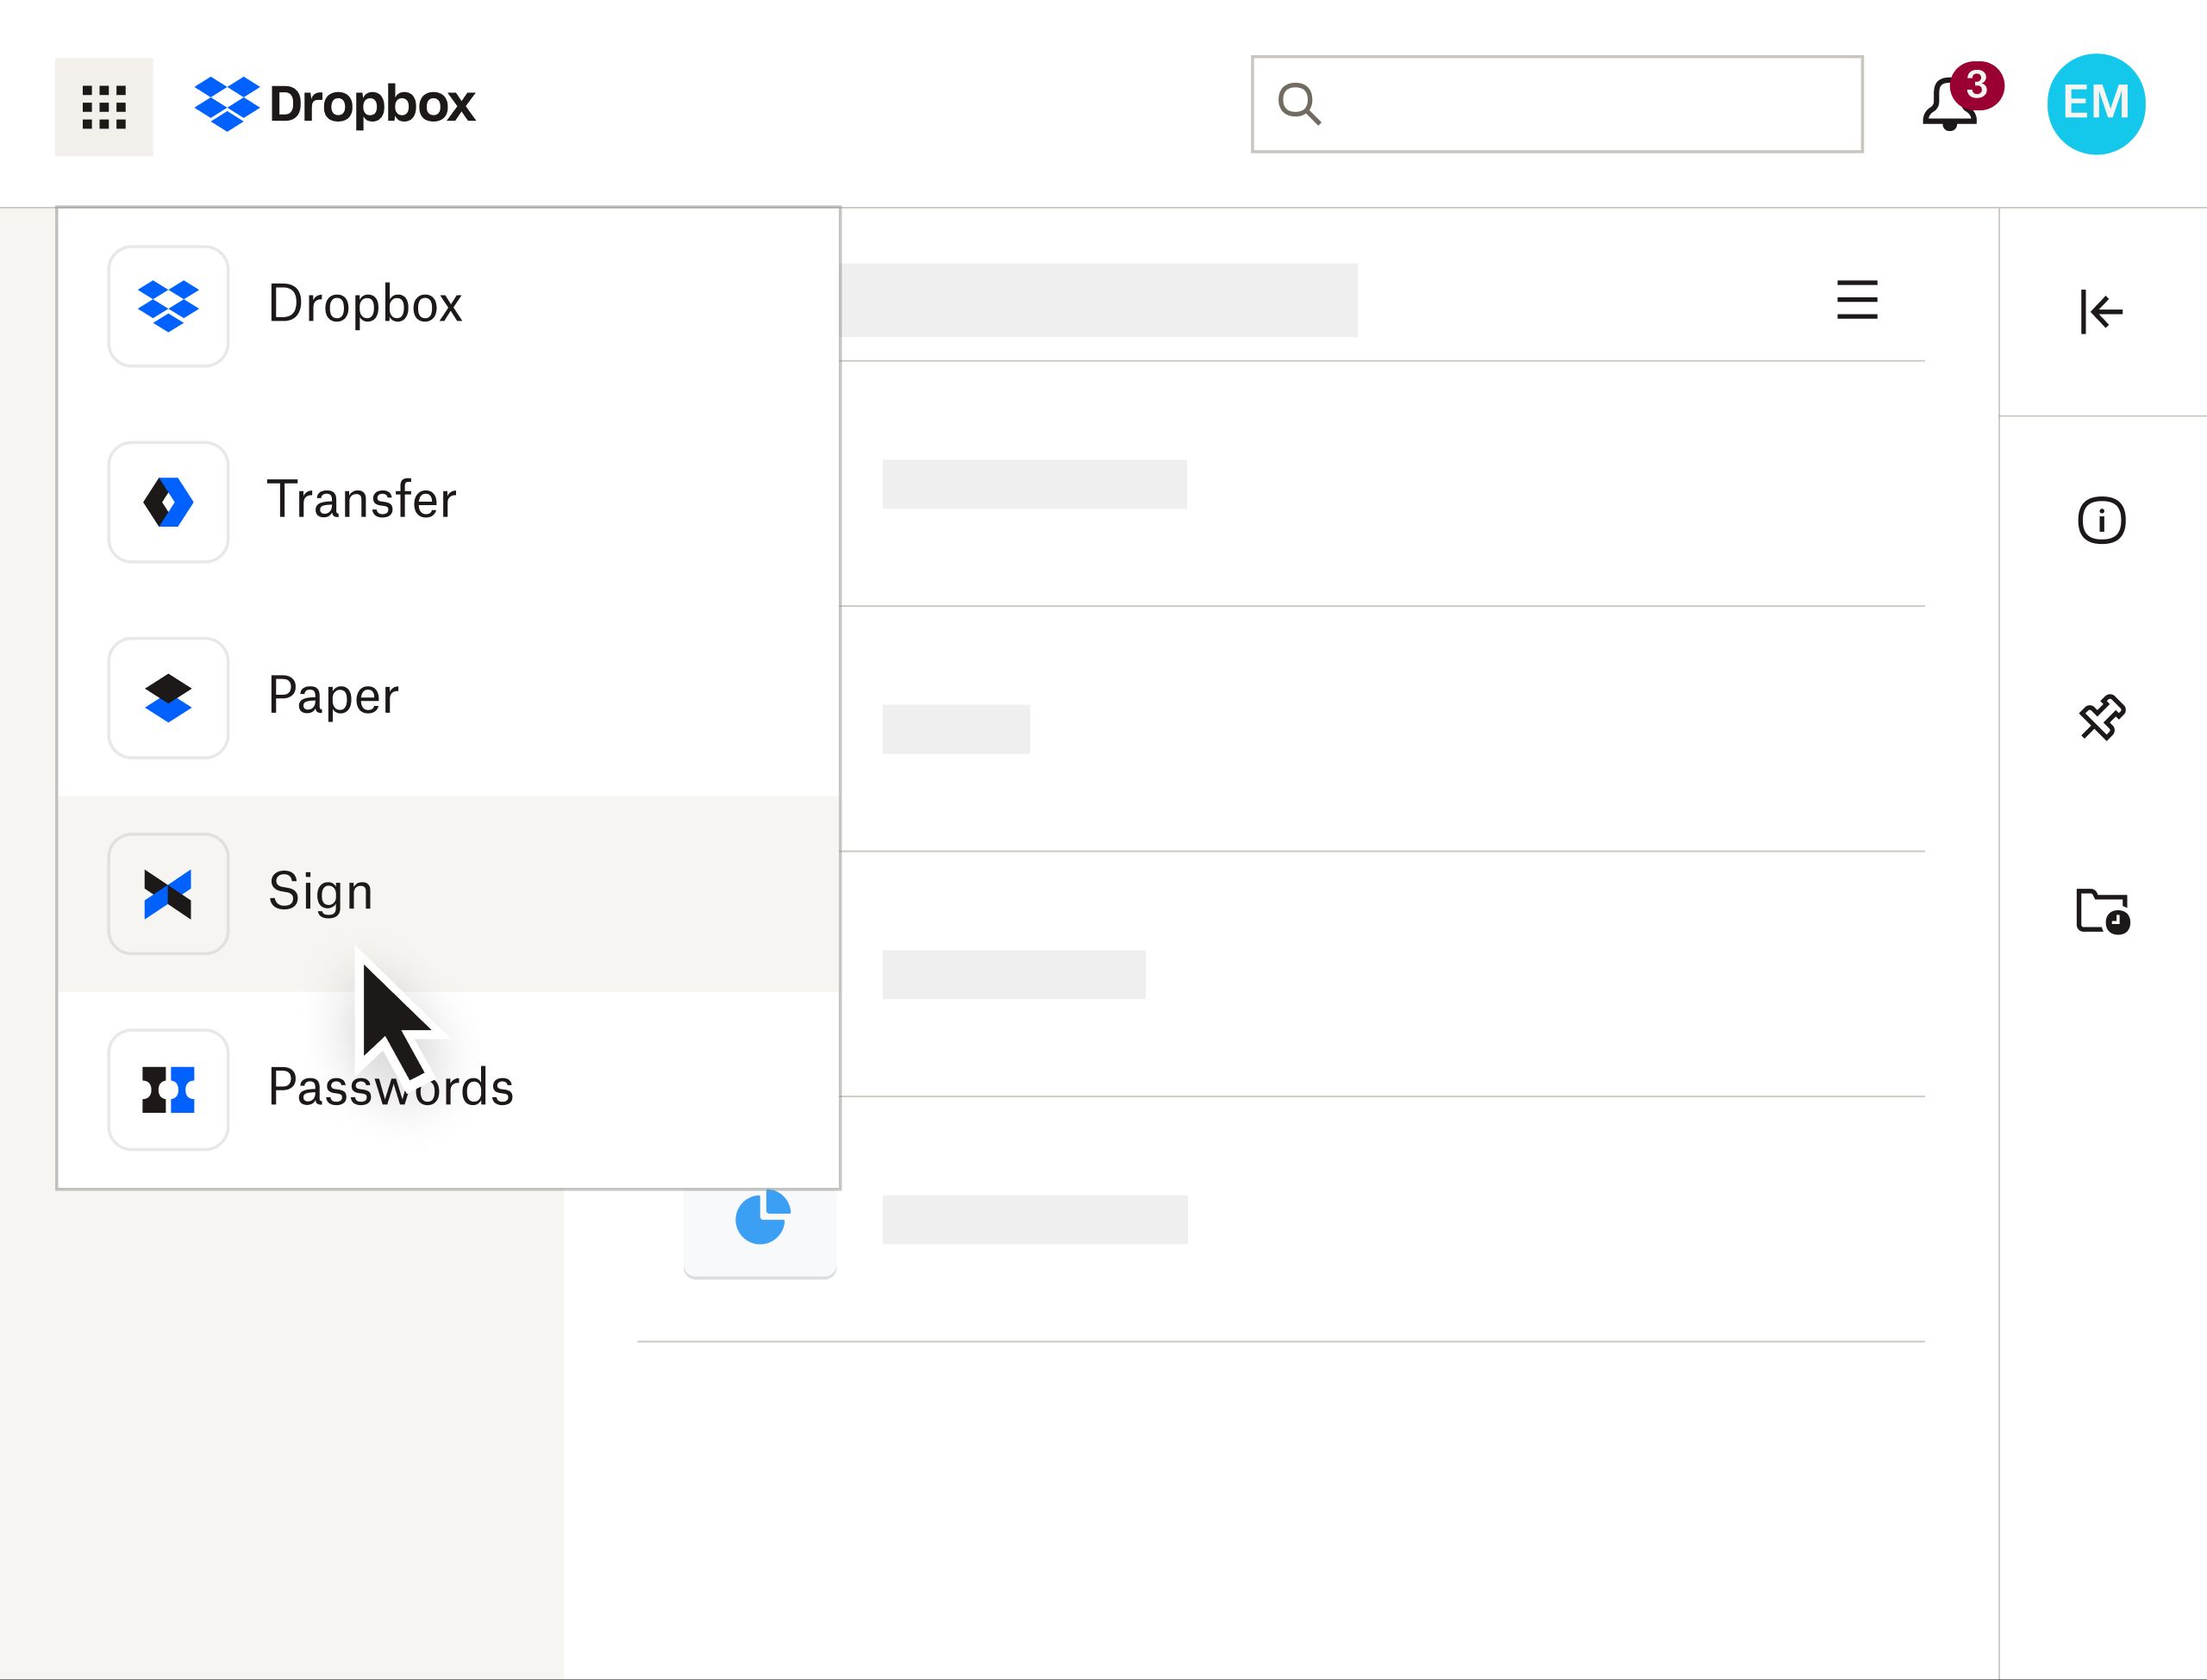 De Dropbox-interface met een gebruiker die Sign selecteert in een vervolgkeuzemenu voor producten